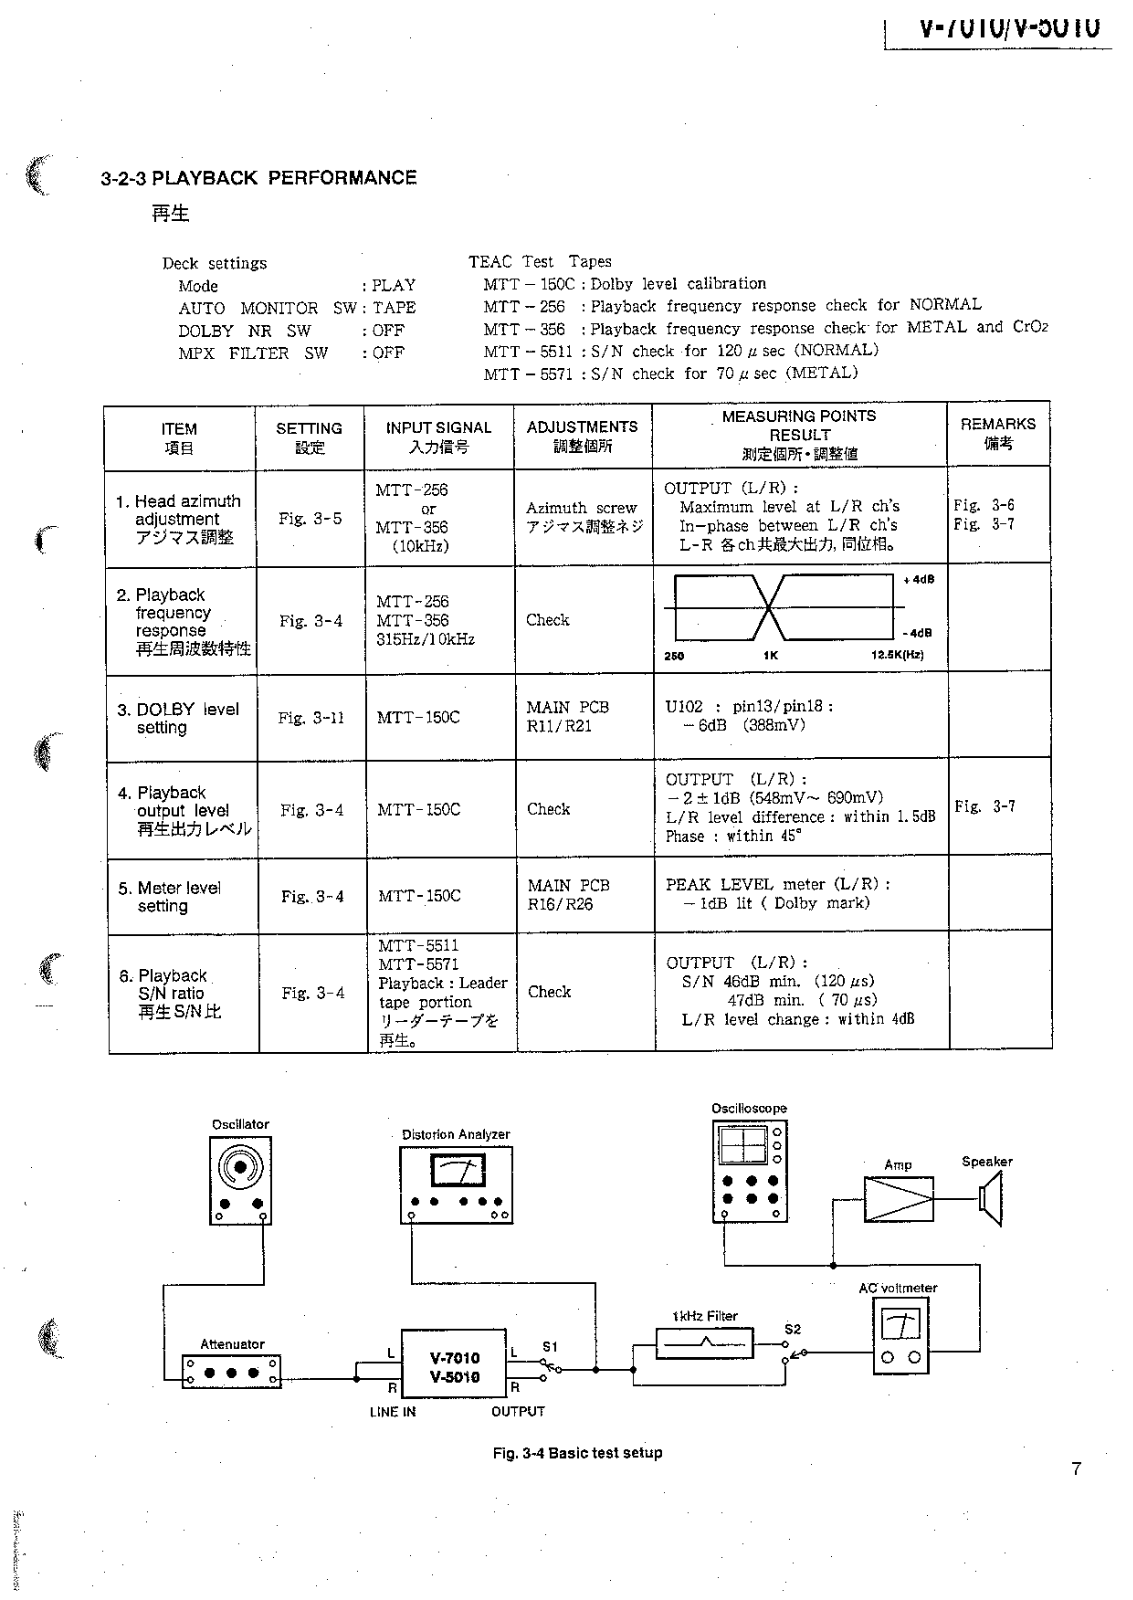 Service Manual-Anleitung für Teac V-7010,V-5010 